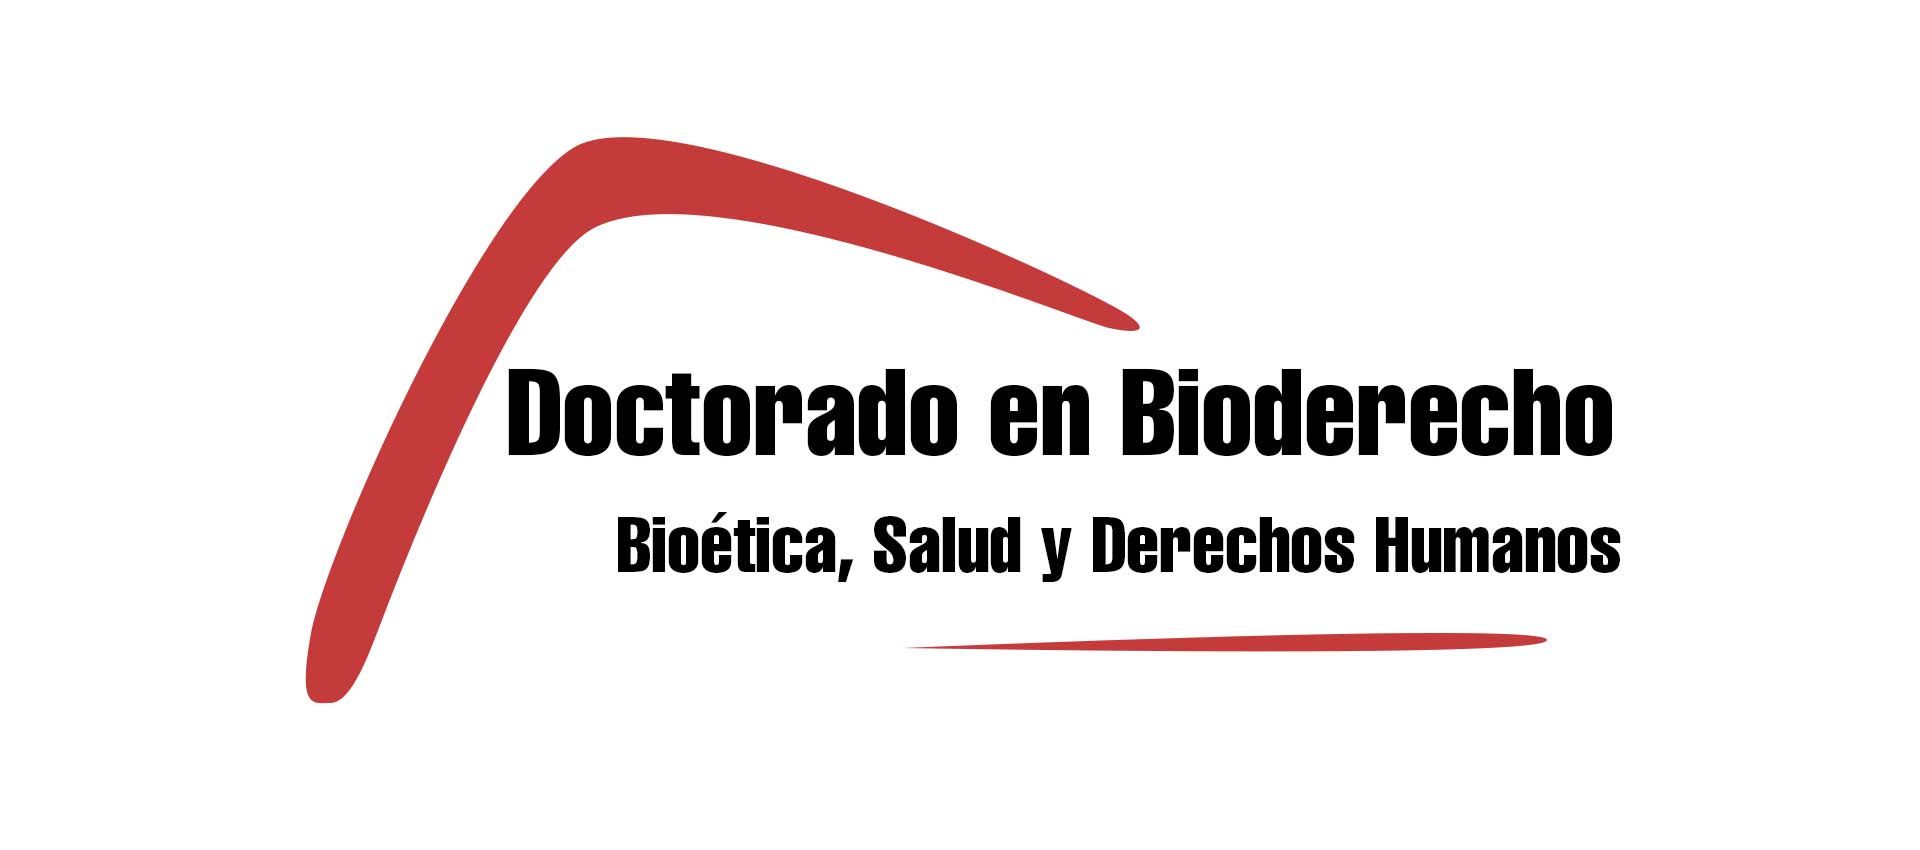 Aprobado por ANECA y verificado por el Consejo de Universidades el Programa de Doctorado Conjunto Interuniversitario en Bioderecho: Bioética, Salud y Derechos Humanos entre la Universidad de Murcia y la Univesidad Autónoma de San Luis Potosí de México.